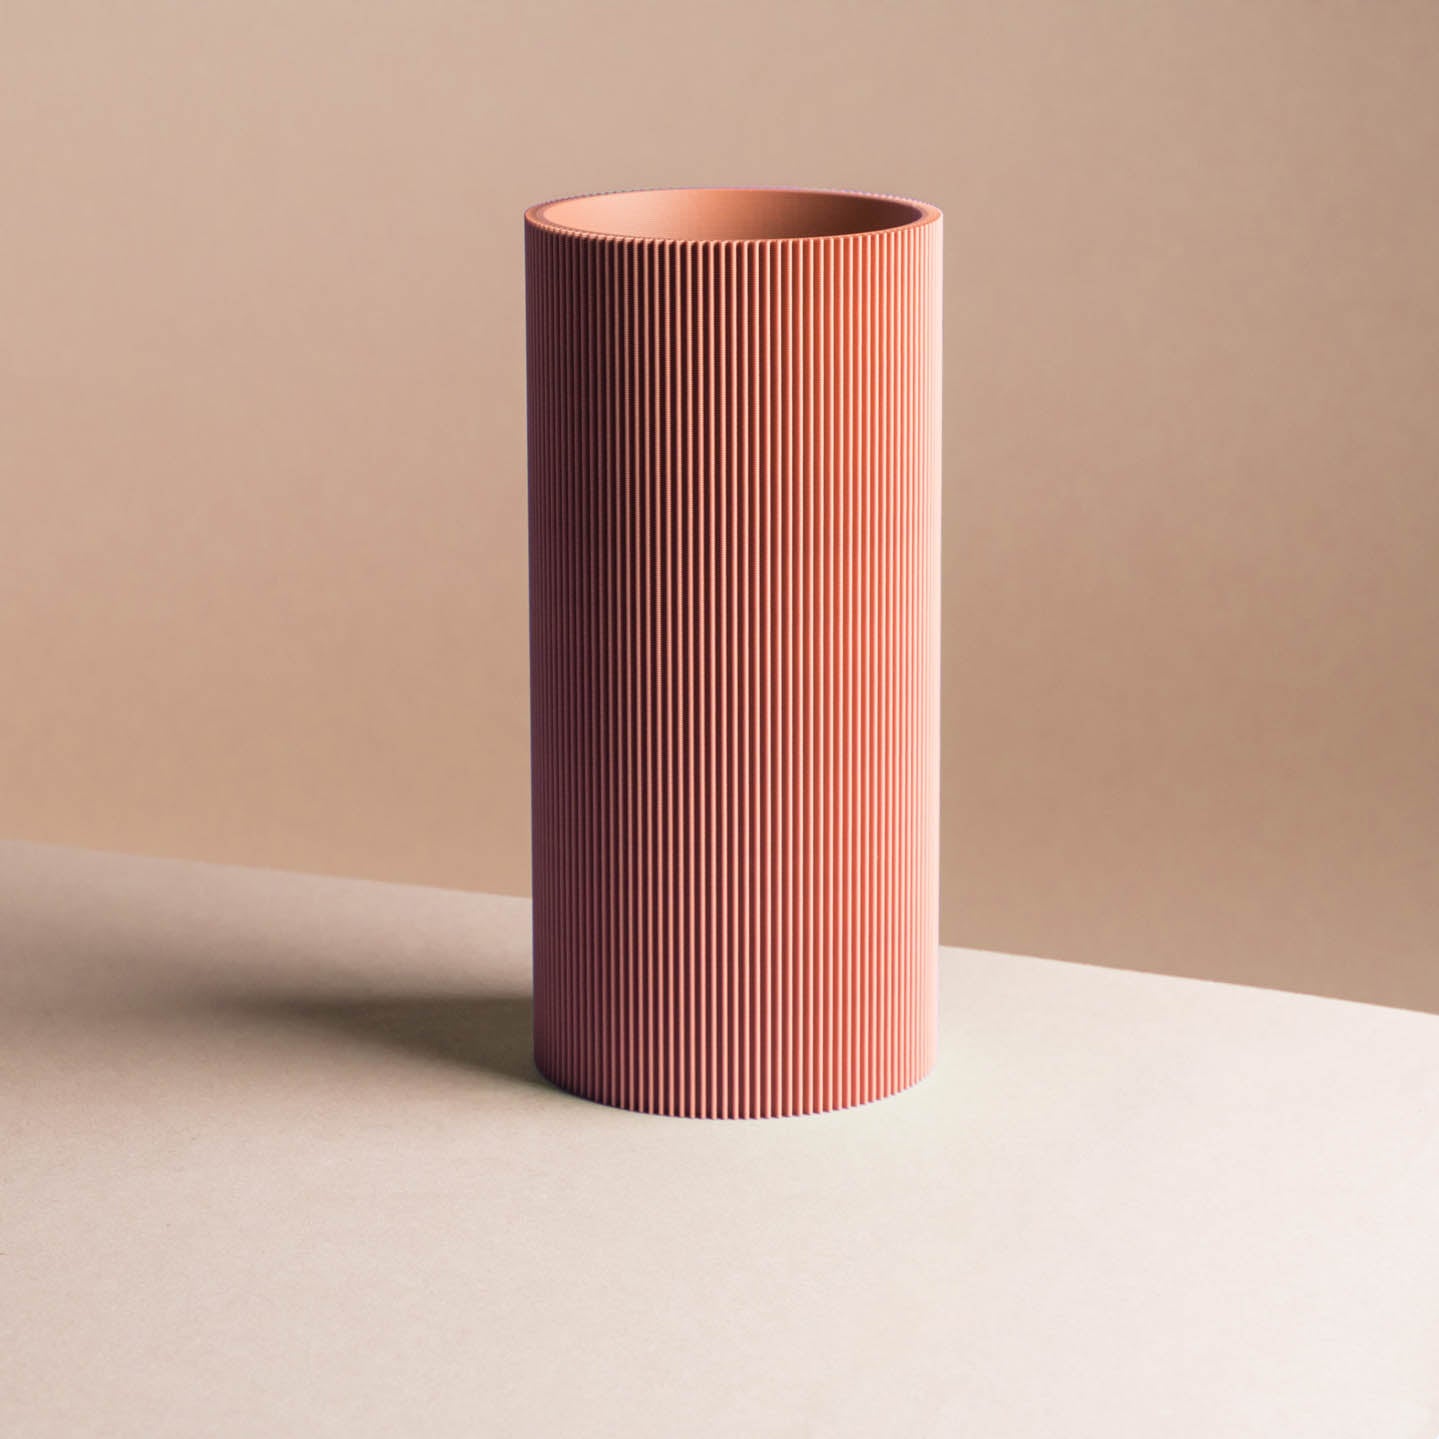 3D-Druck Vase 'Gerade' in klassischen Farben